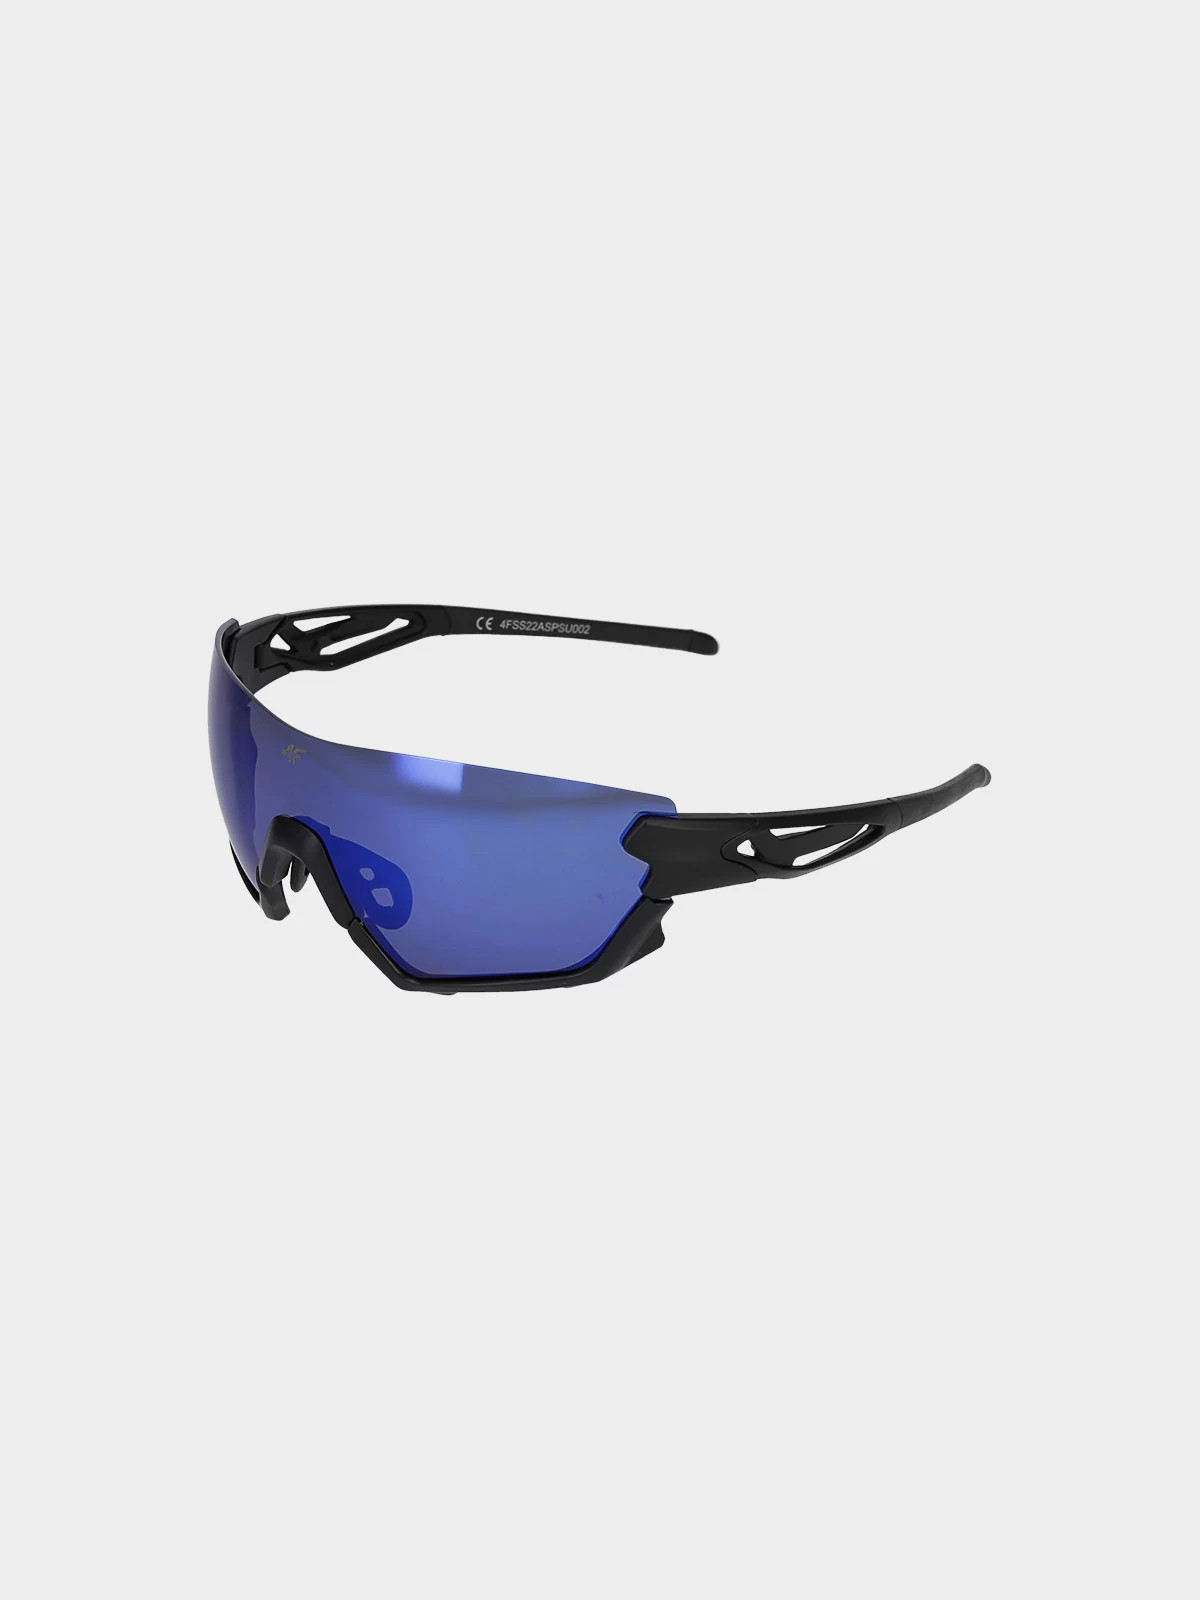 Polarizační sportovní brýle 4FSS23ASPSU004-33S modré - 4F univerzální